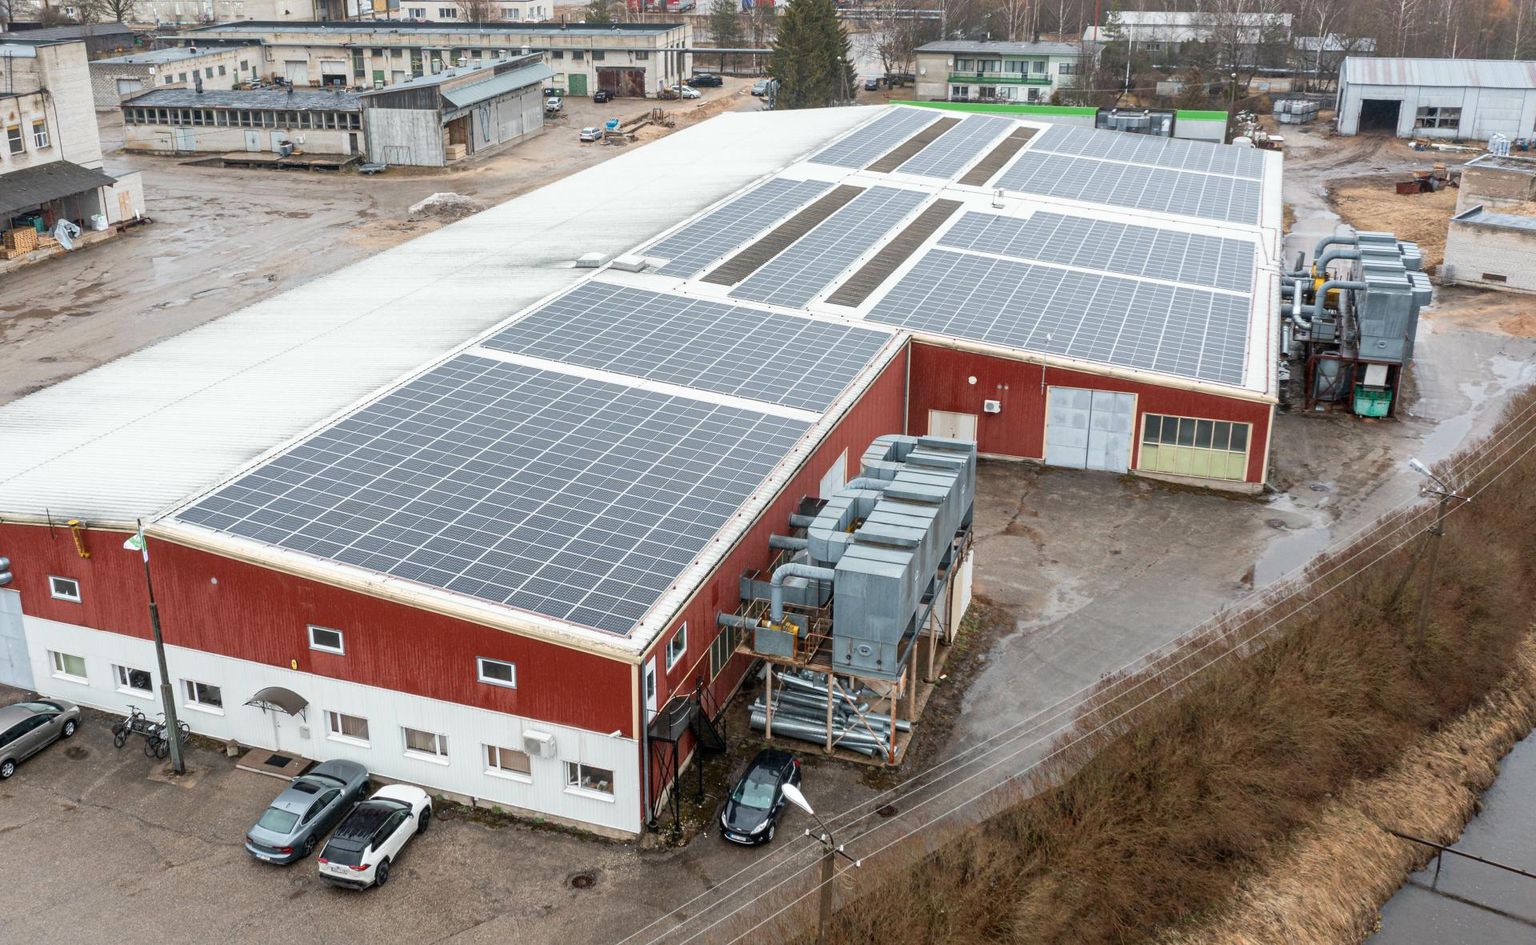 Võru mööblifirma Wermo tootmishoonete katusele paigaldati üle tuhande päikesepaneeli. 2 x arvo meeks